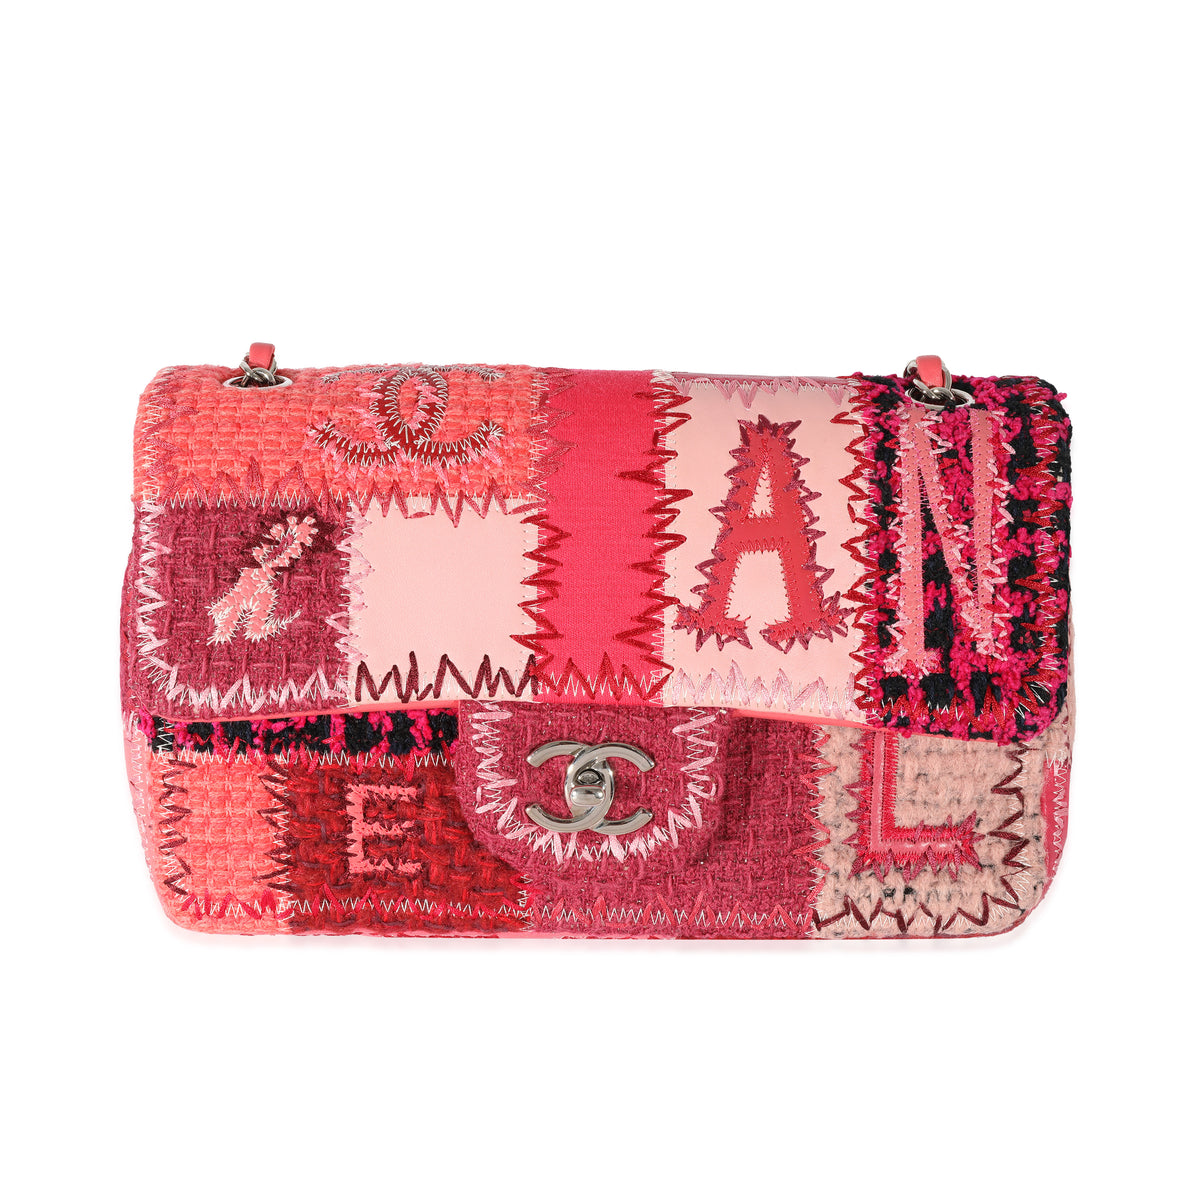 Chanel Red Medium Patchwork Classic Flap Bag, myGemma, SG